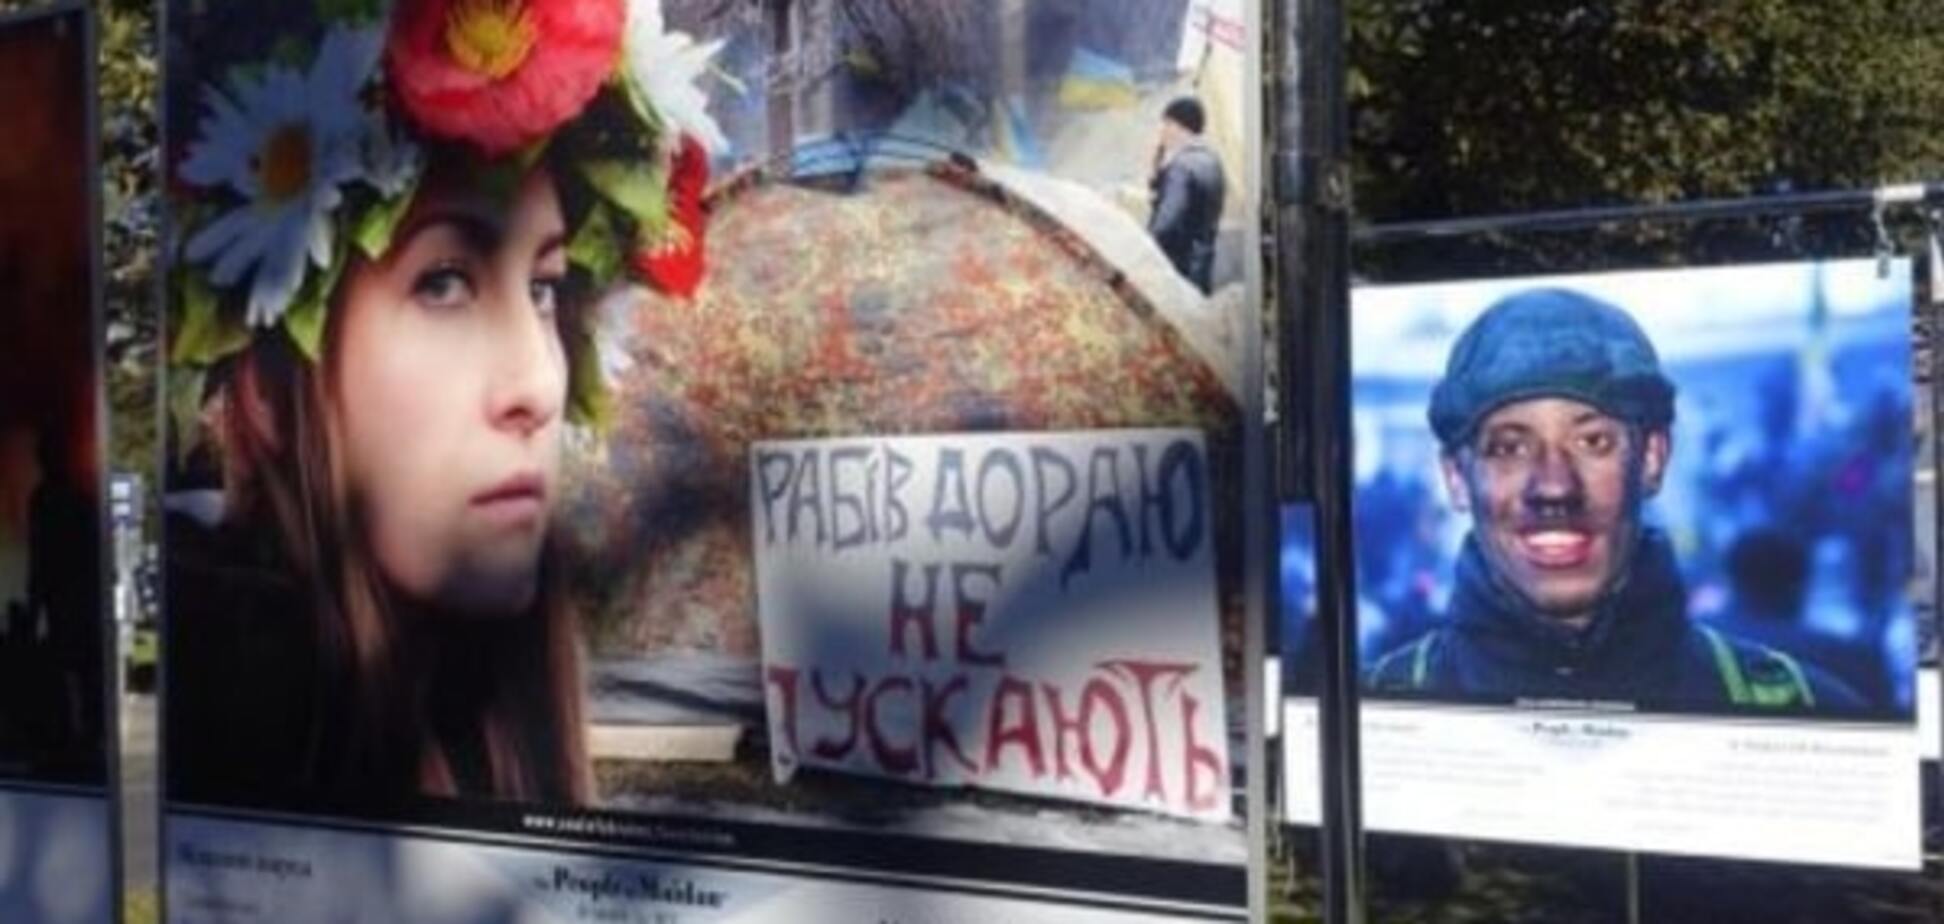 Конфлікт у Ризі через проукраїнську виставку: експозицію знову пошкодили